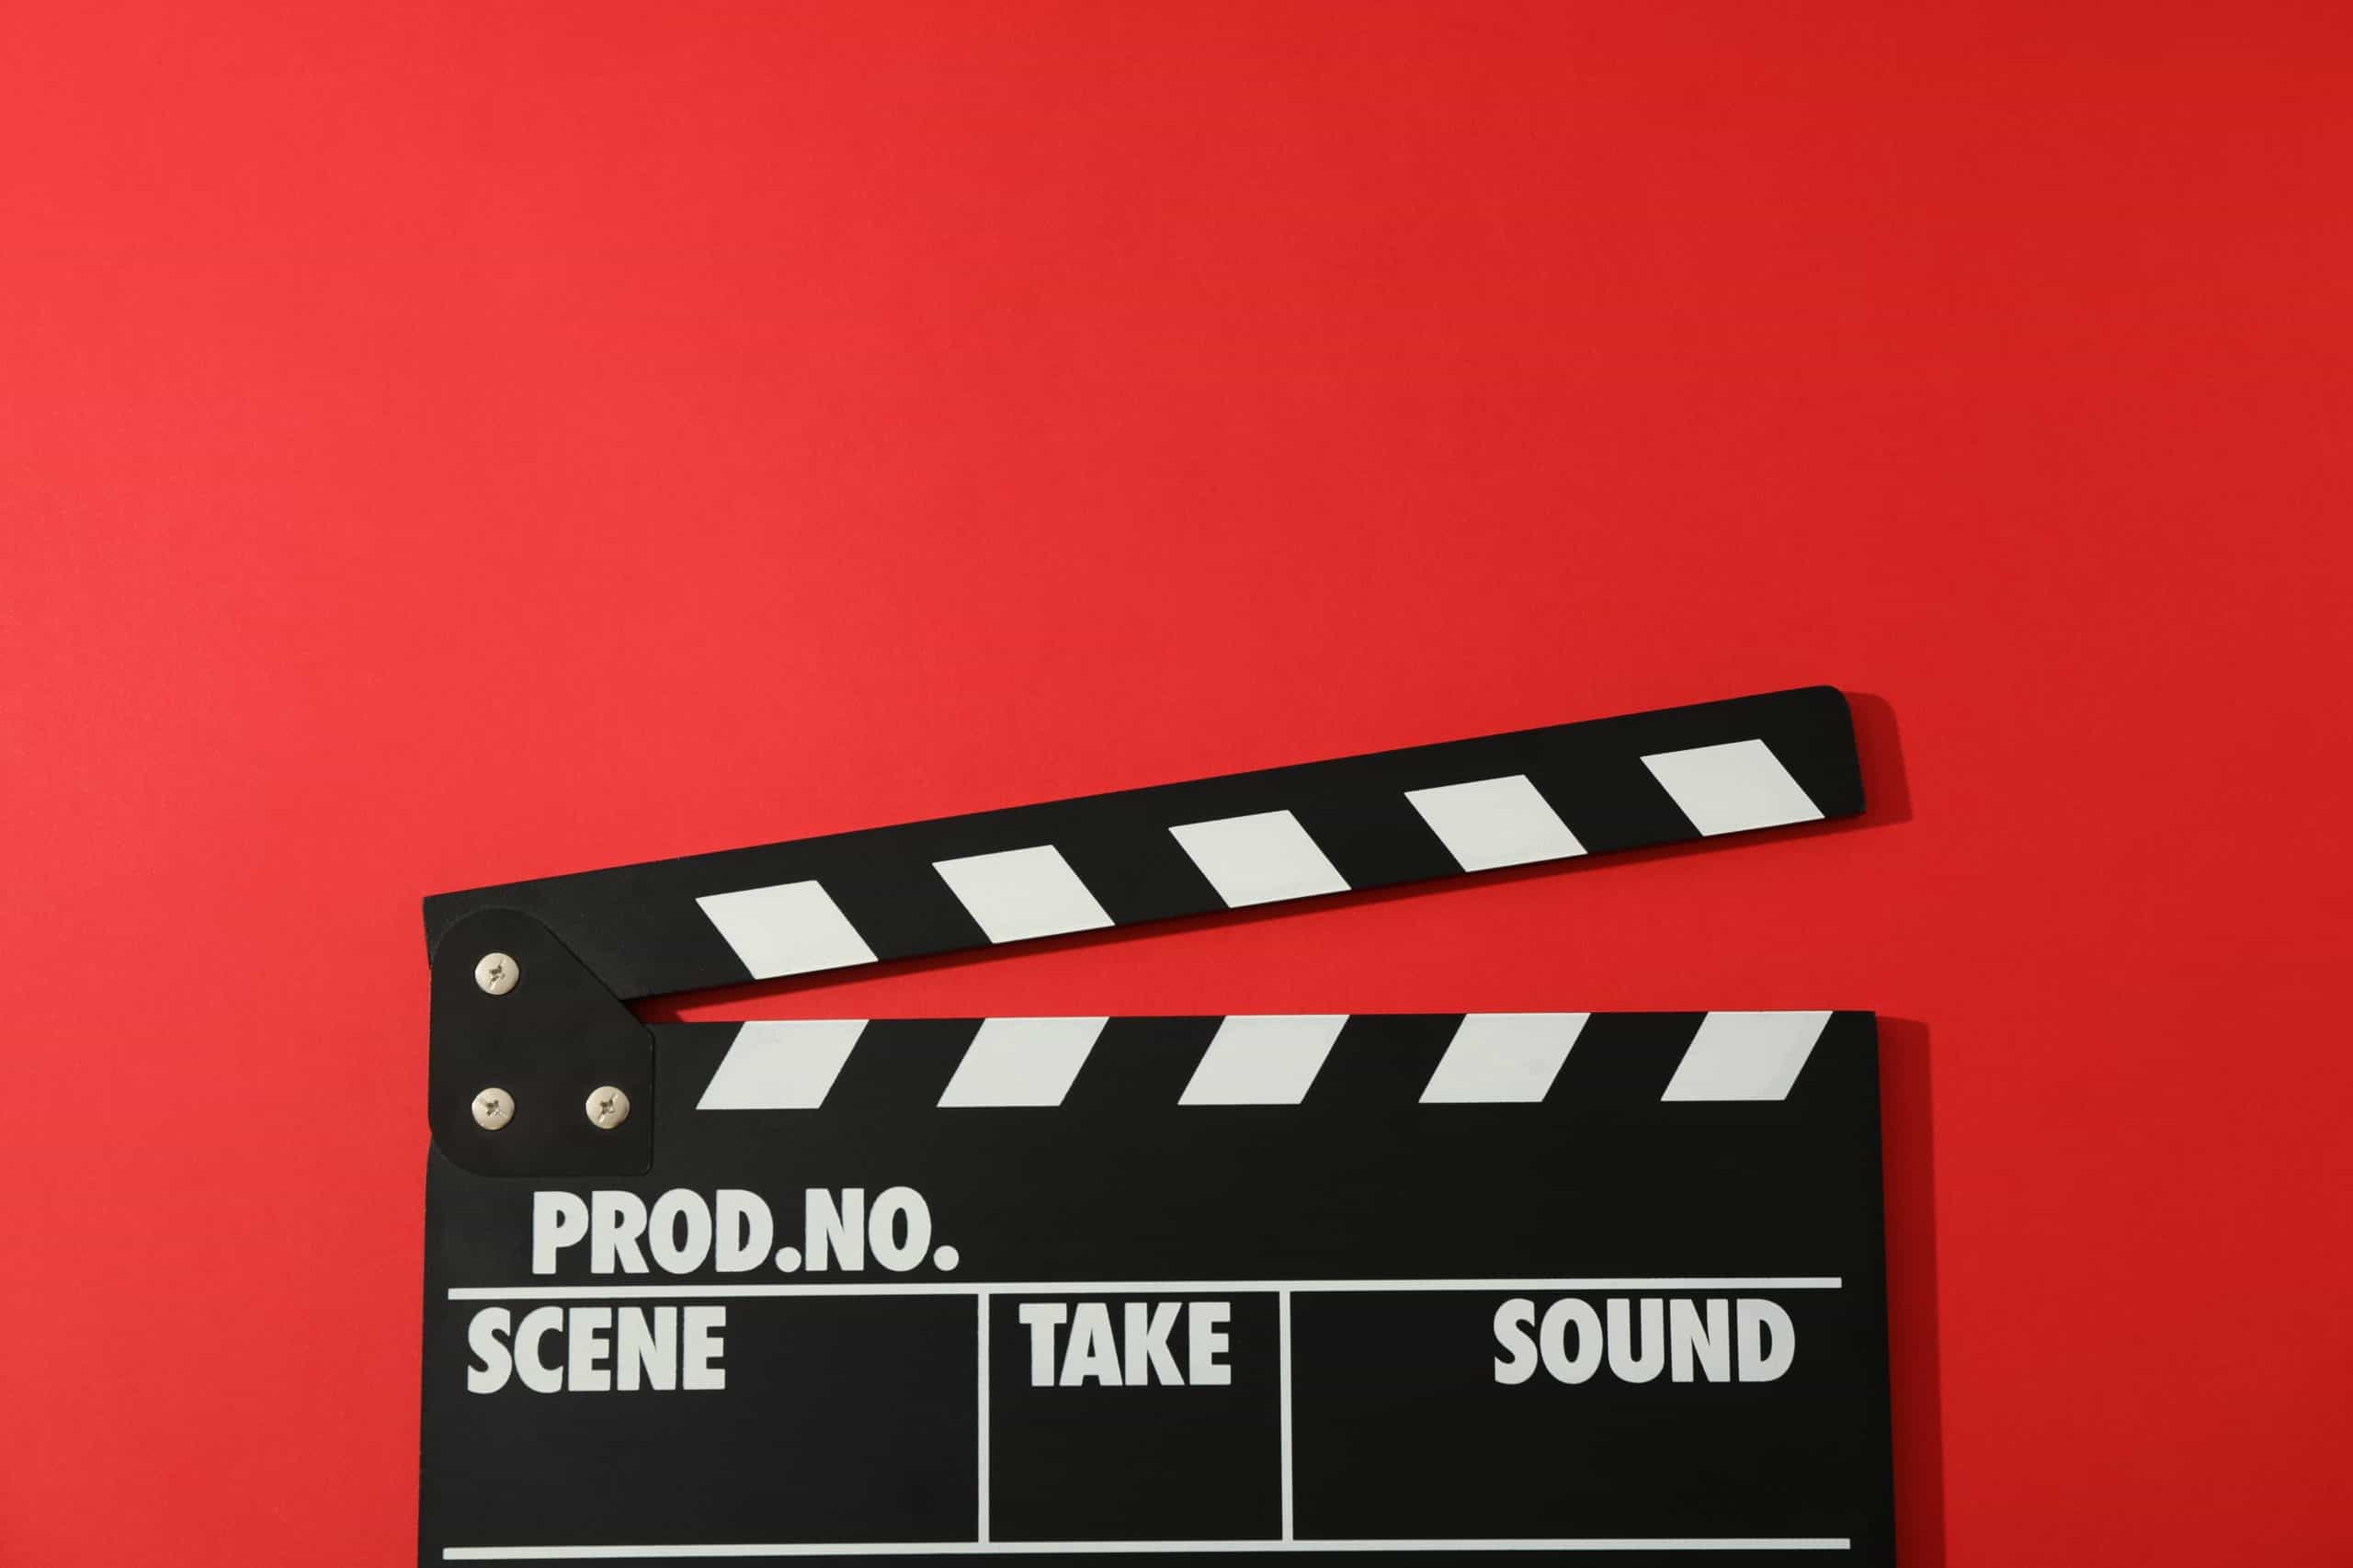 Hollywood film studio tips for script supervisors